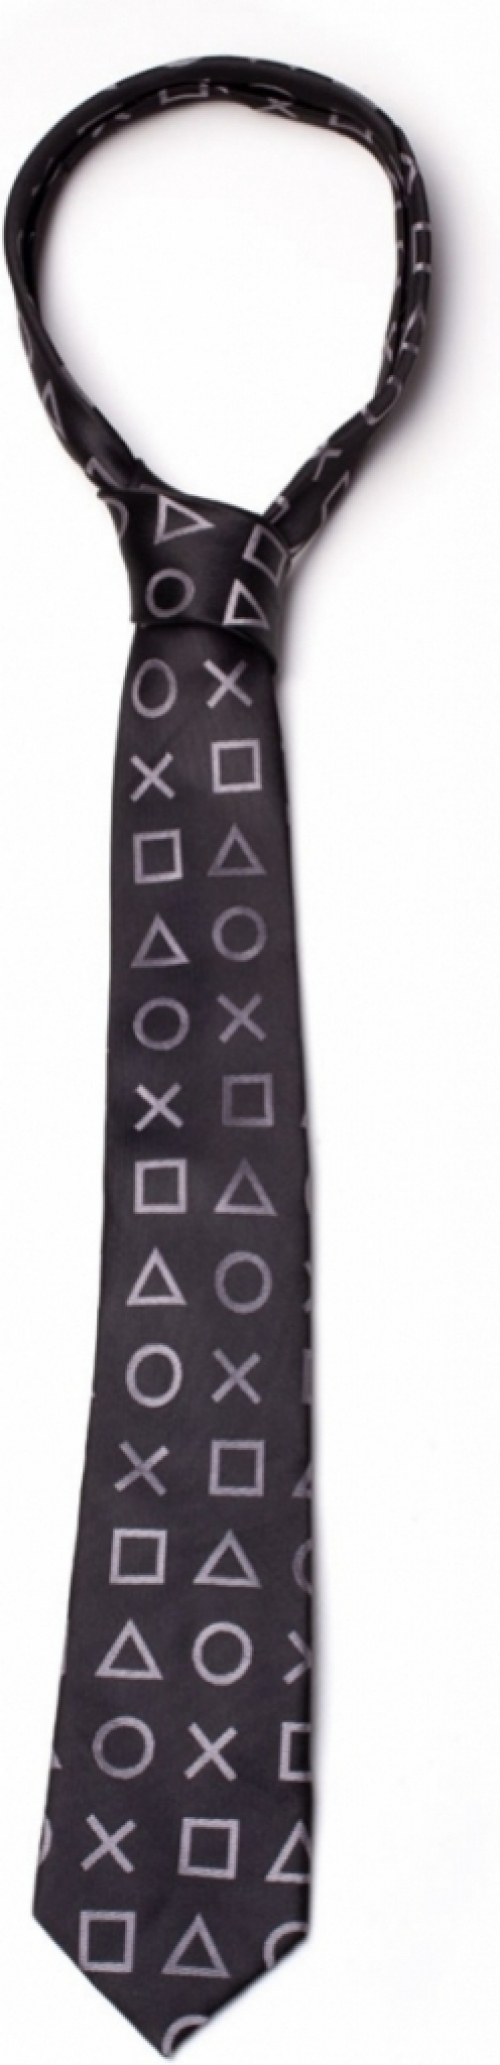 Difuzed Playstation - Symbols Necktie